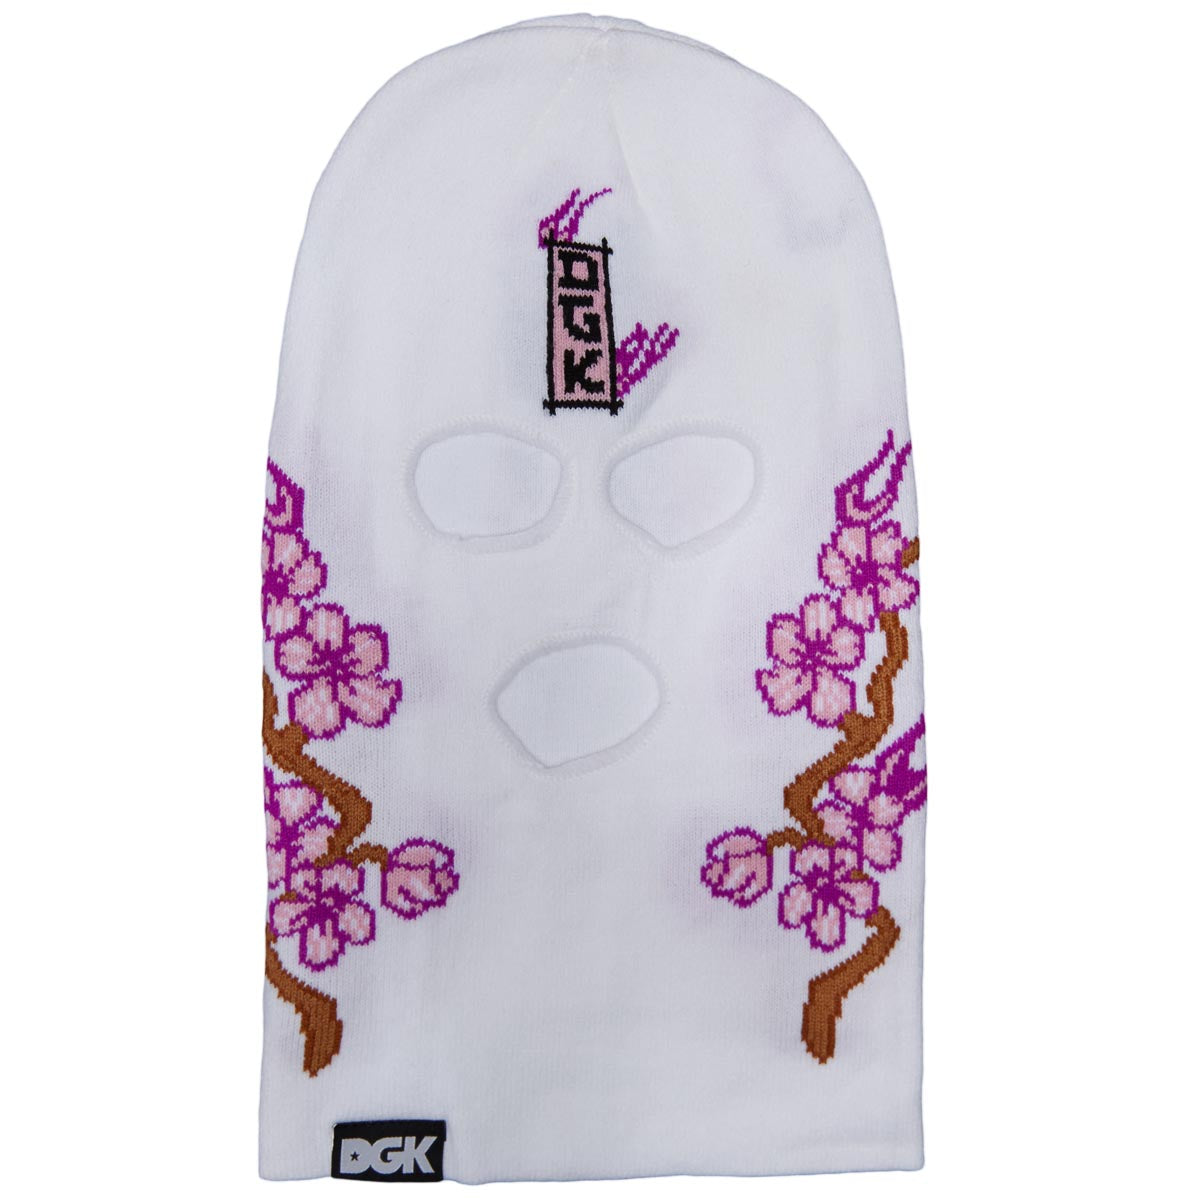 DGK Fire Blossom Ski Mask Beanie - White image 1